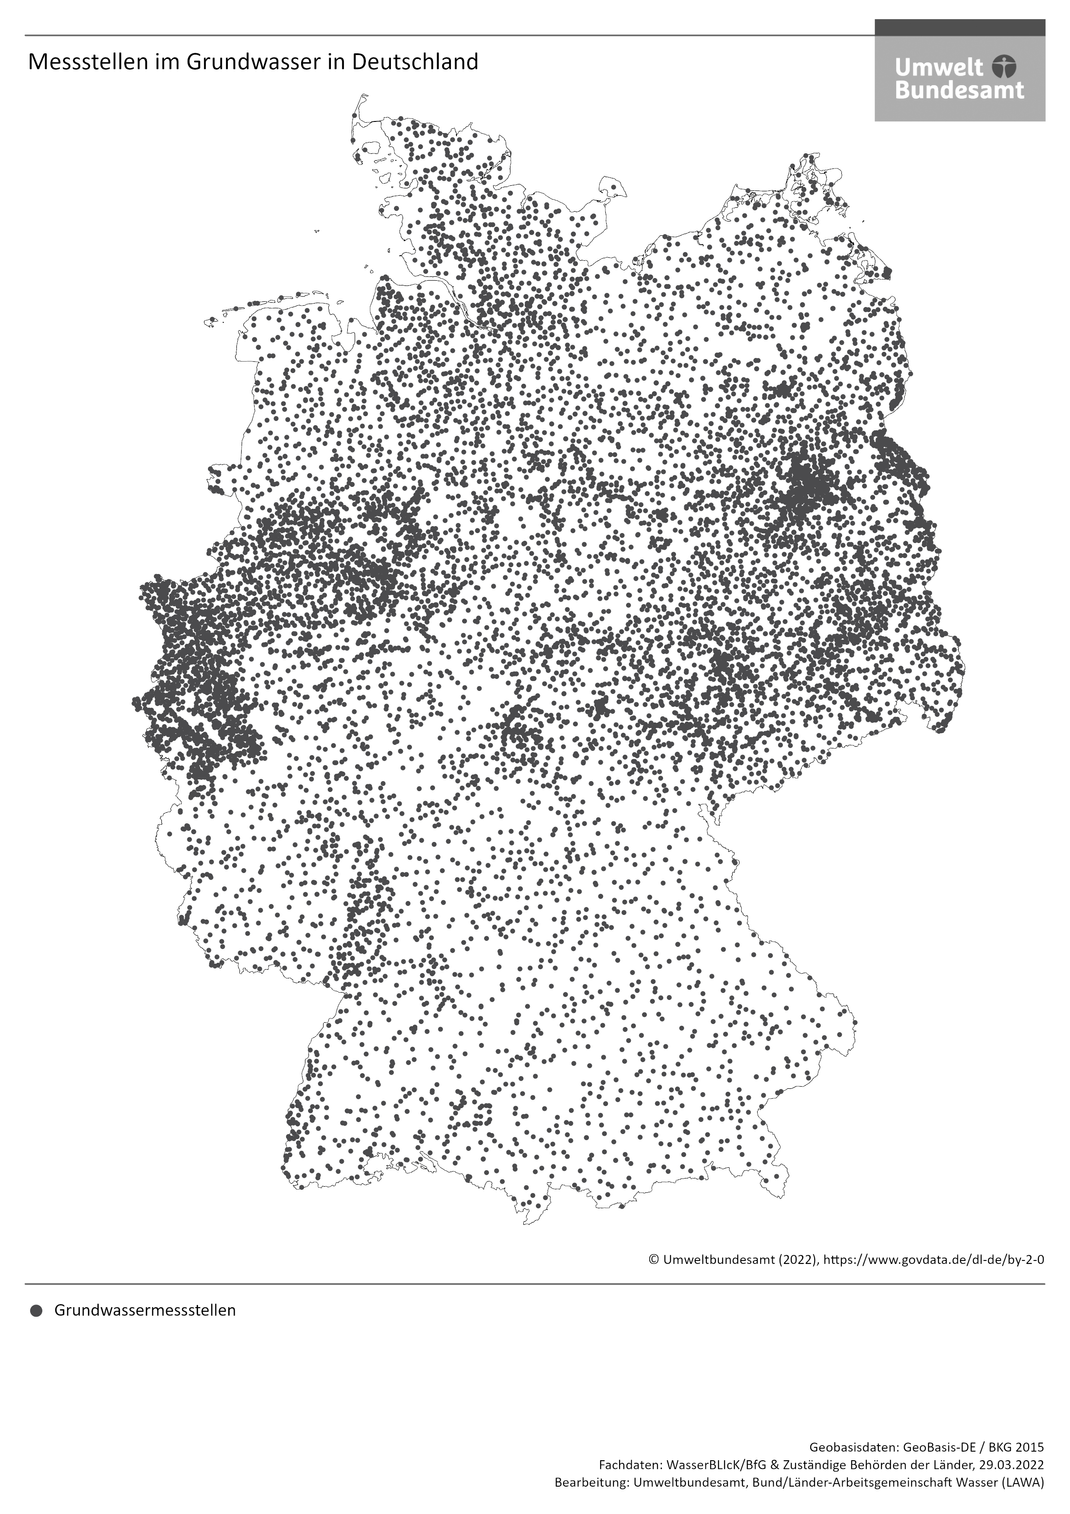 Die Übersicht zeigt die Messstellen in Deutschland, die die Menge und den chemischen Zustand des Grundwassers erfassen